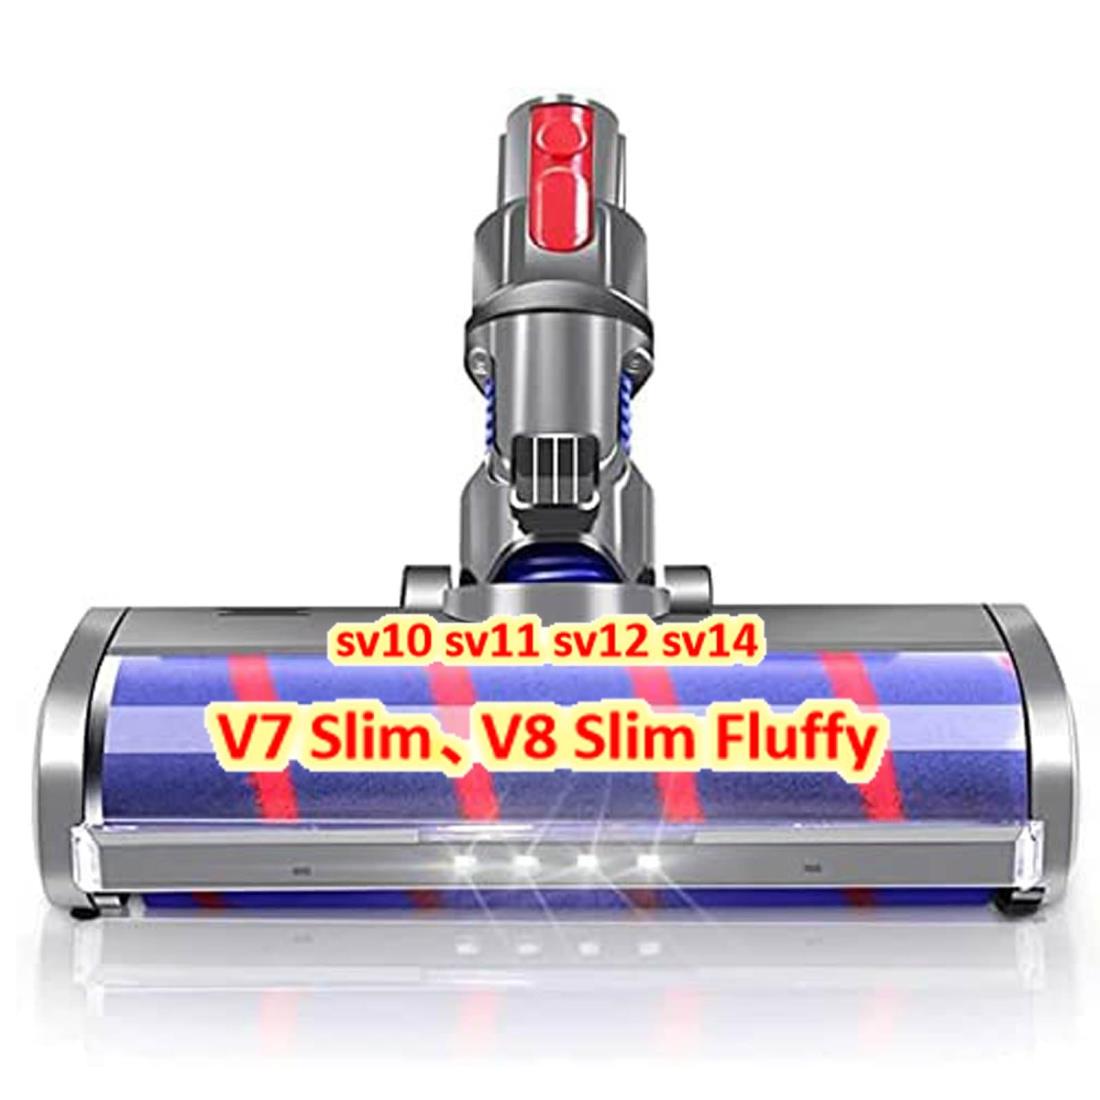 ダイソン ヘッド V7 Slim、V8 Slim Fluffy ソフトローラークリーナーヘッド V7 V8 V10 V11 sv10 sv11 sv12 sv14などに対応 モーターヘッド 、Dysonに互換品/代替品 （Slimは一部非対応）